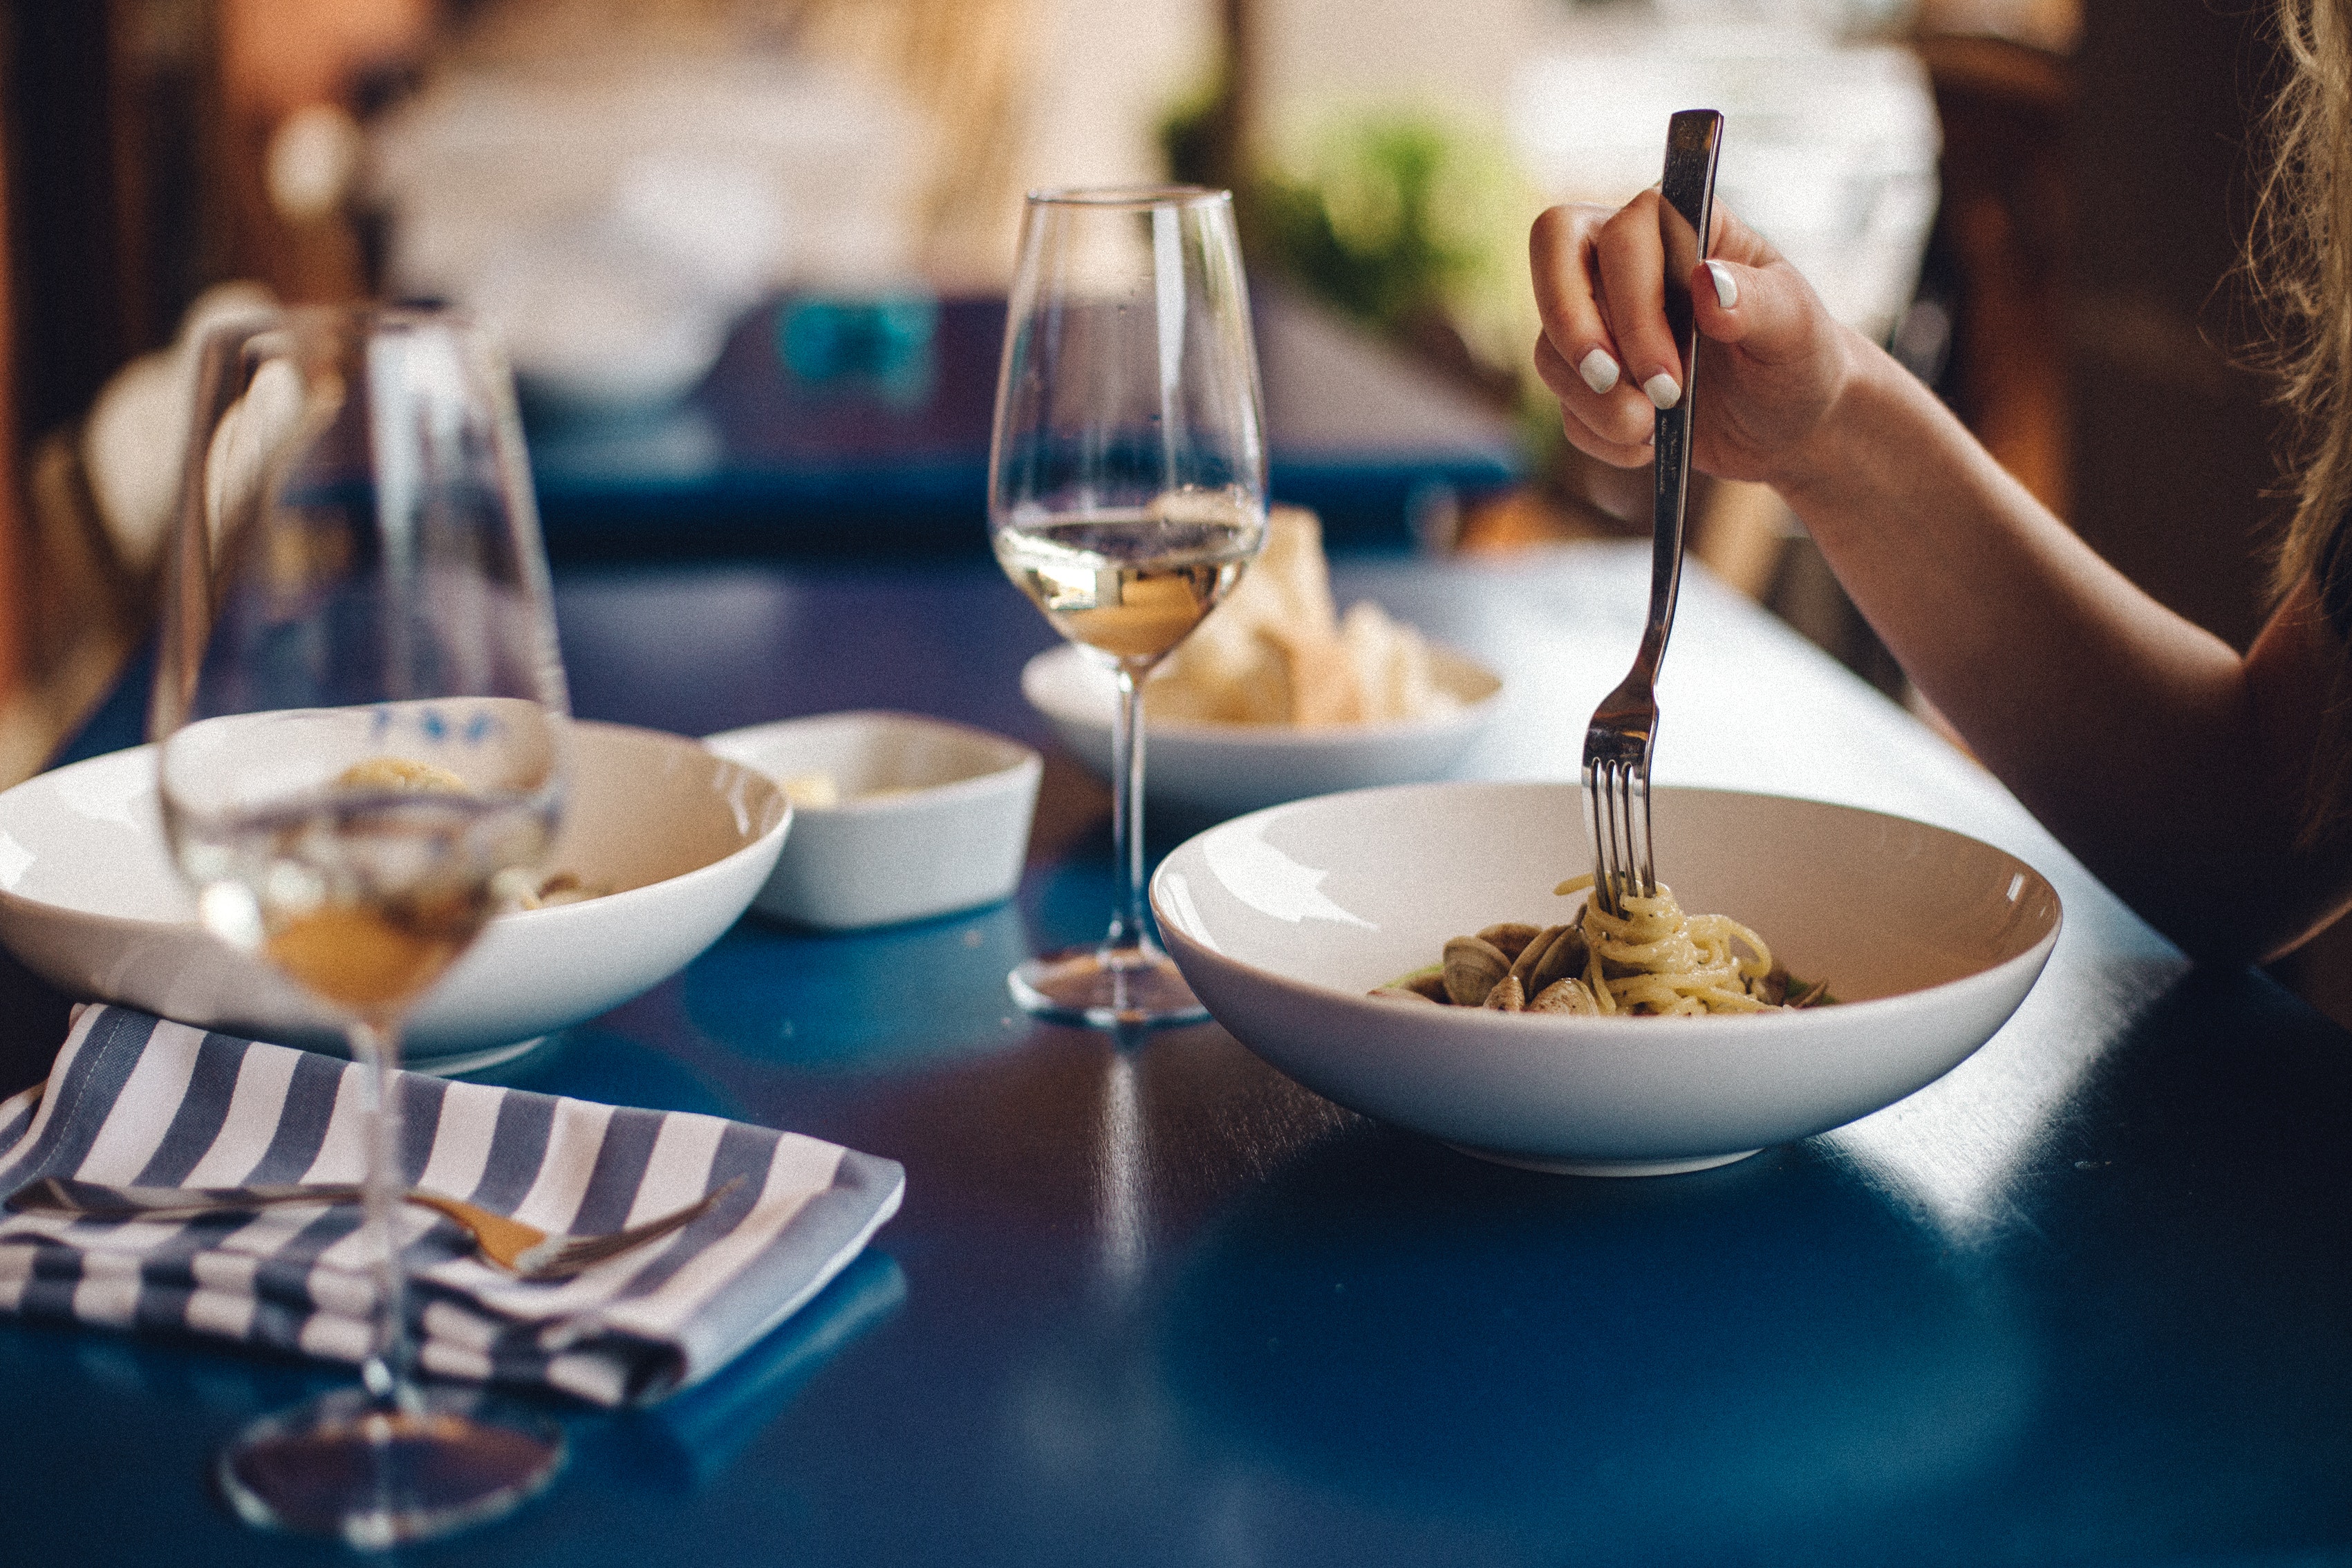 Eine Frau isst Spaghetti mit Meeresfrüchten und trinkt Weißwein an einem blauen Tisch dazu